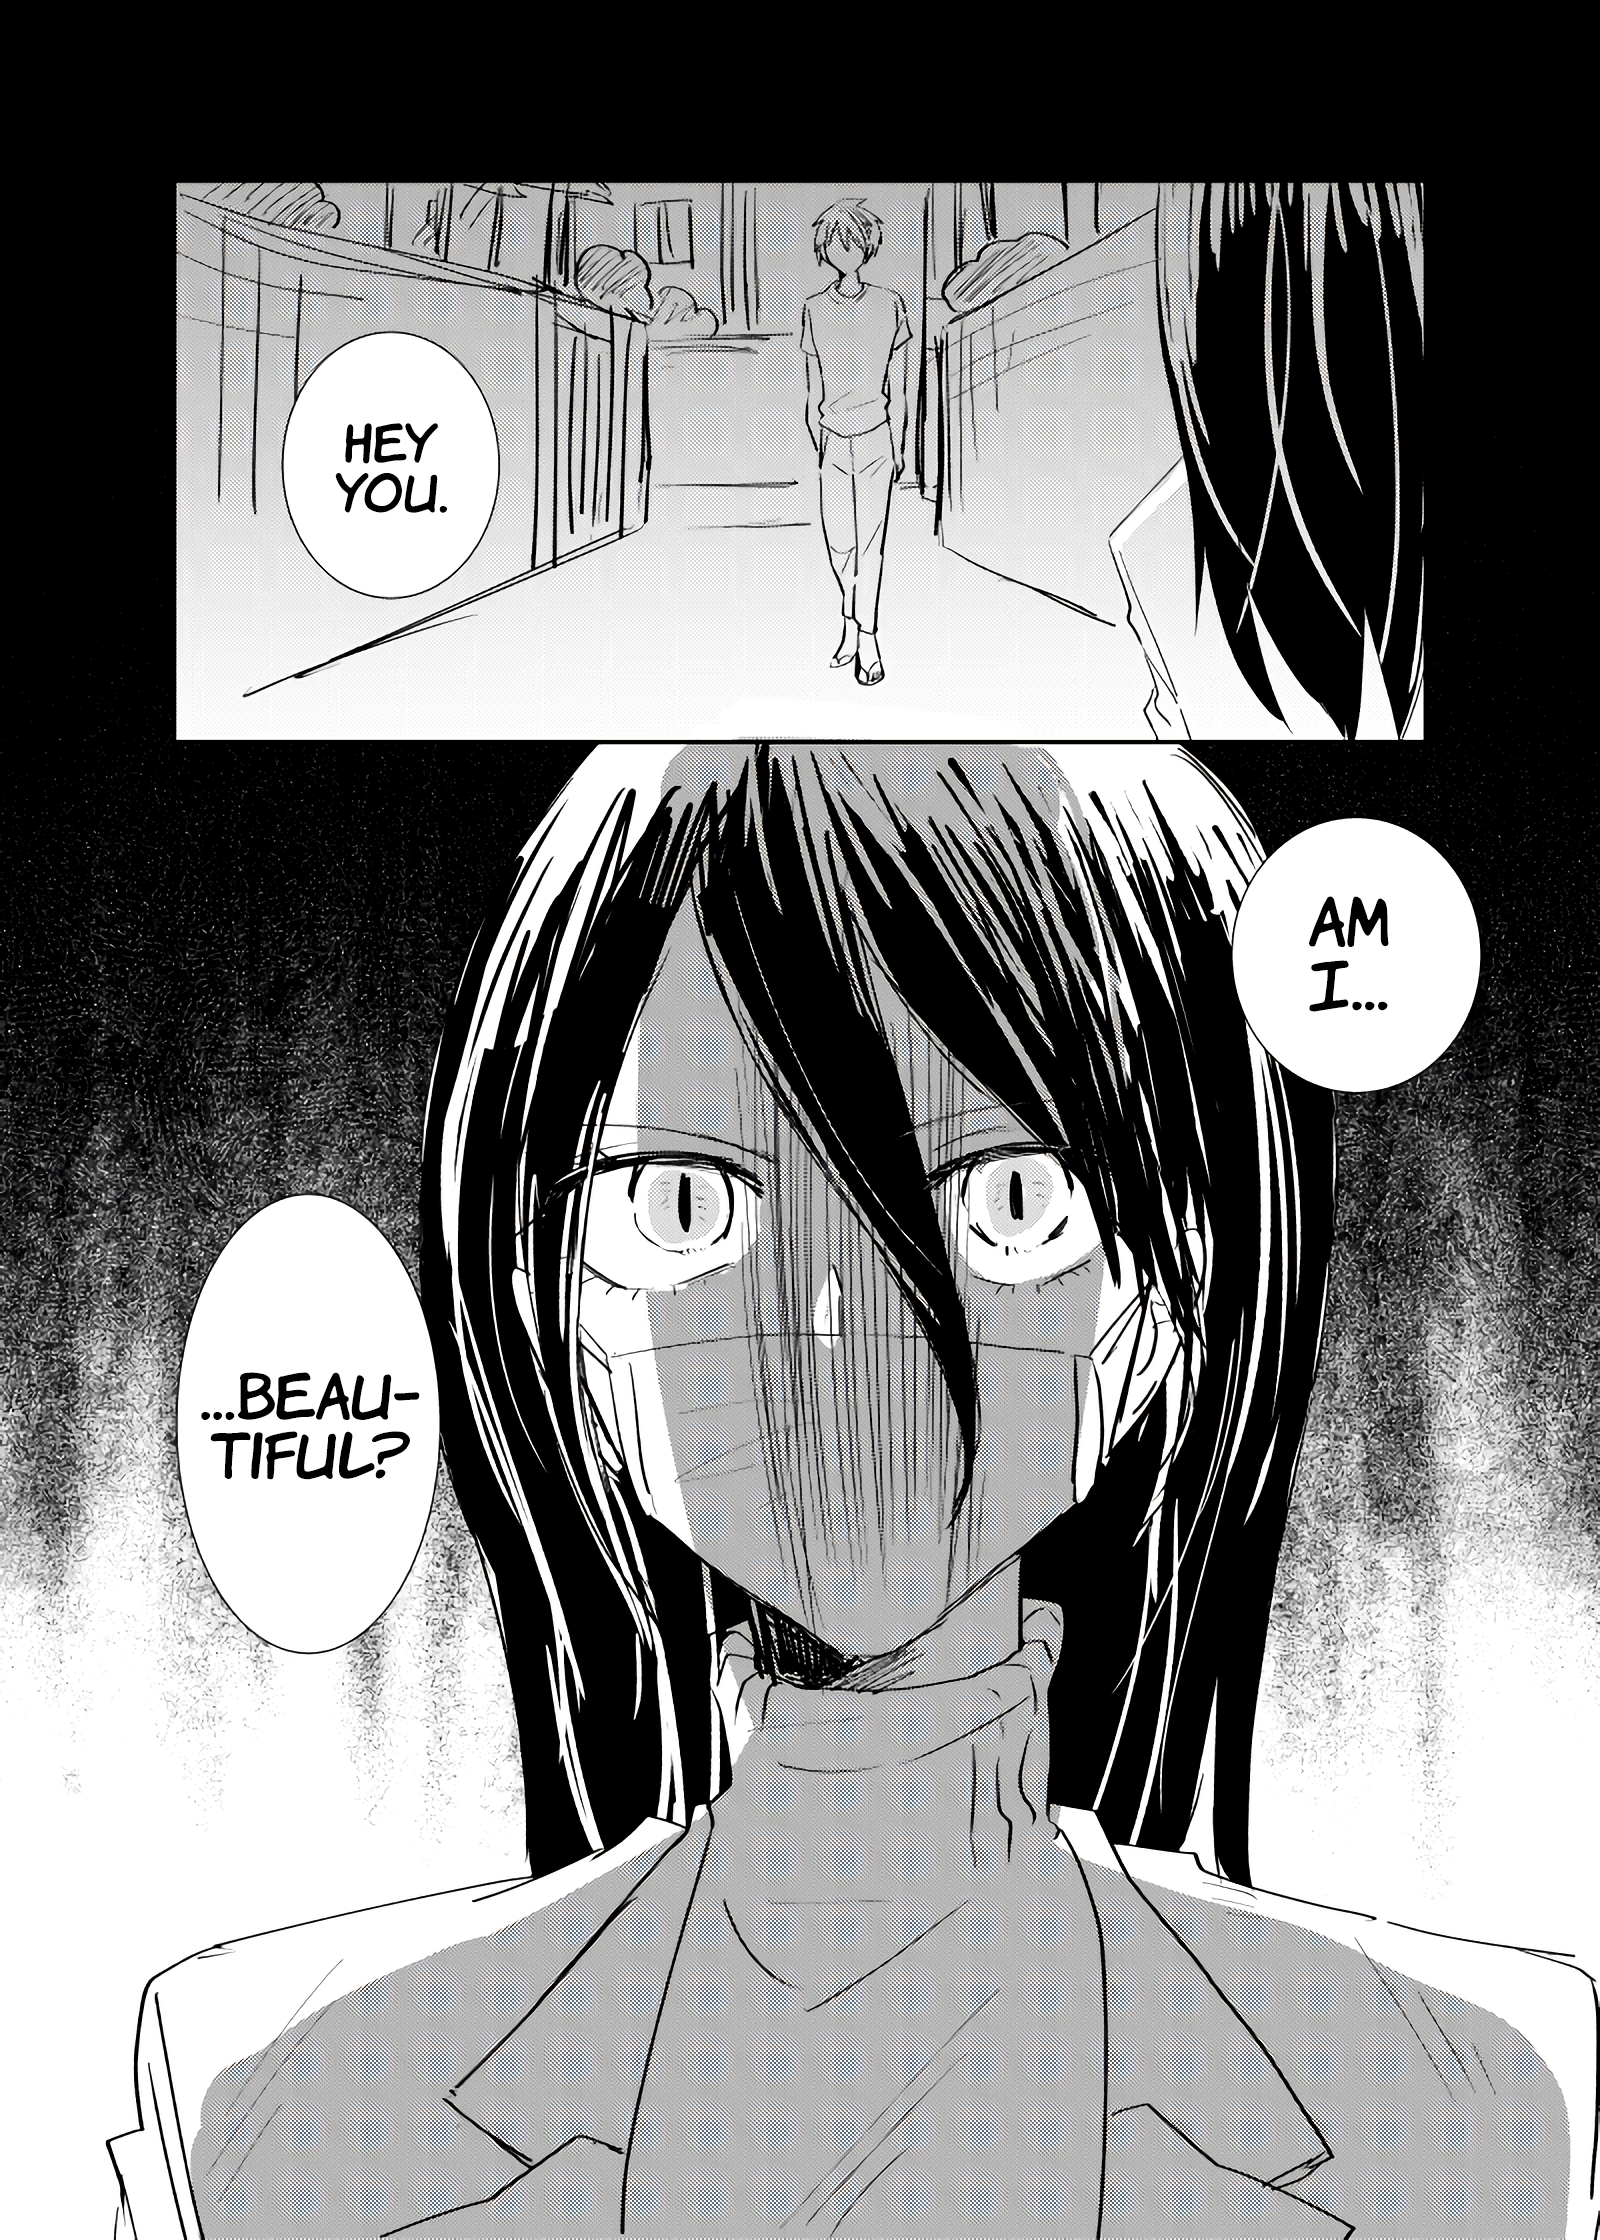 Slit mouth woman manga